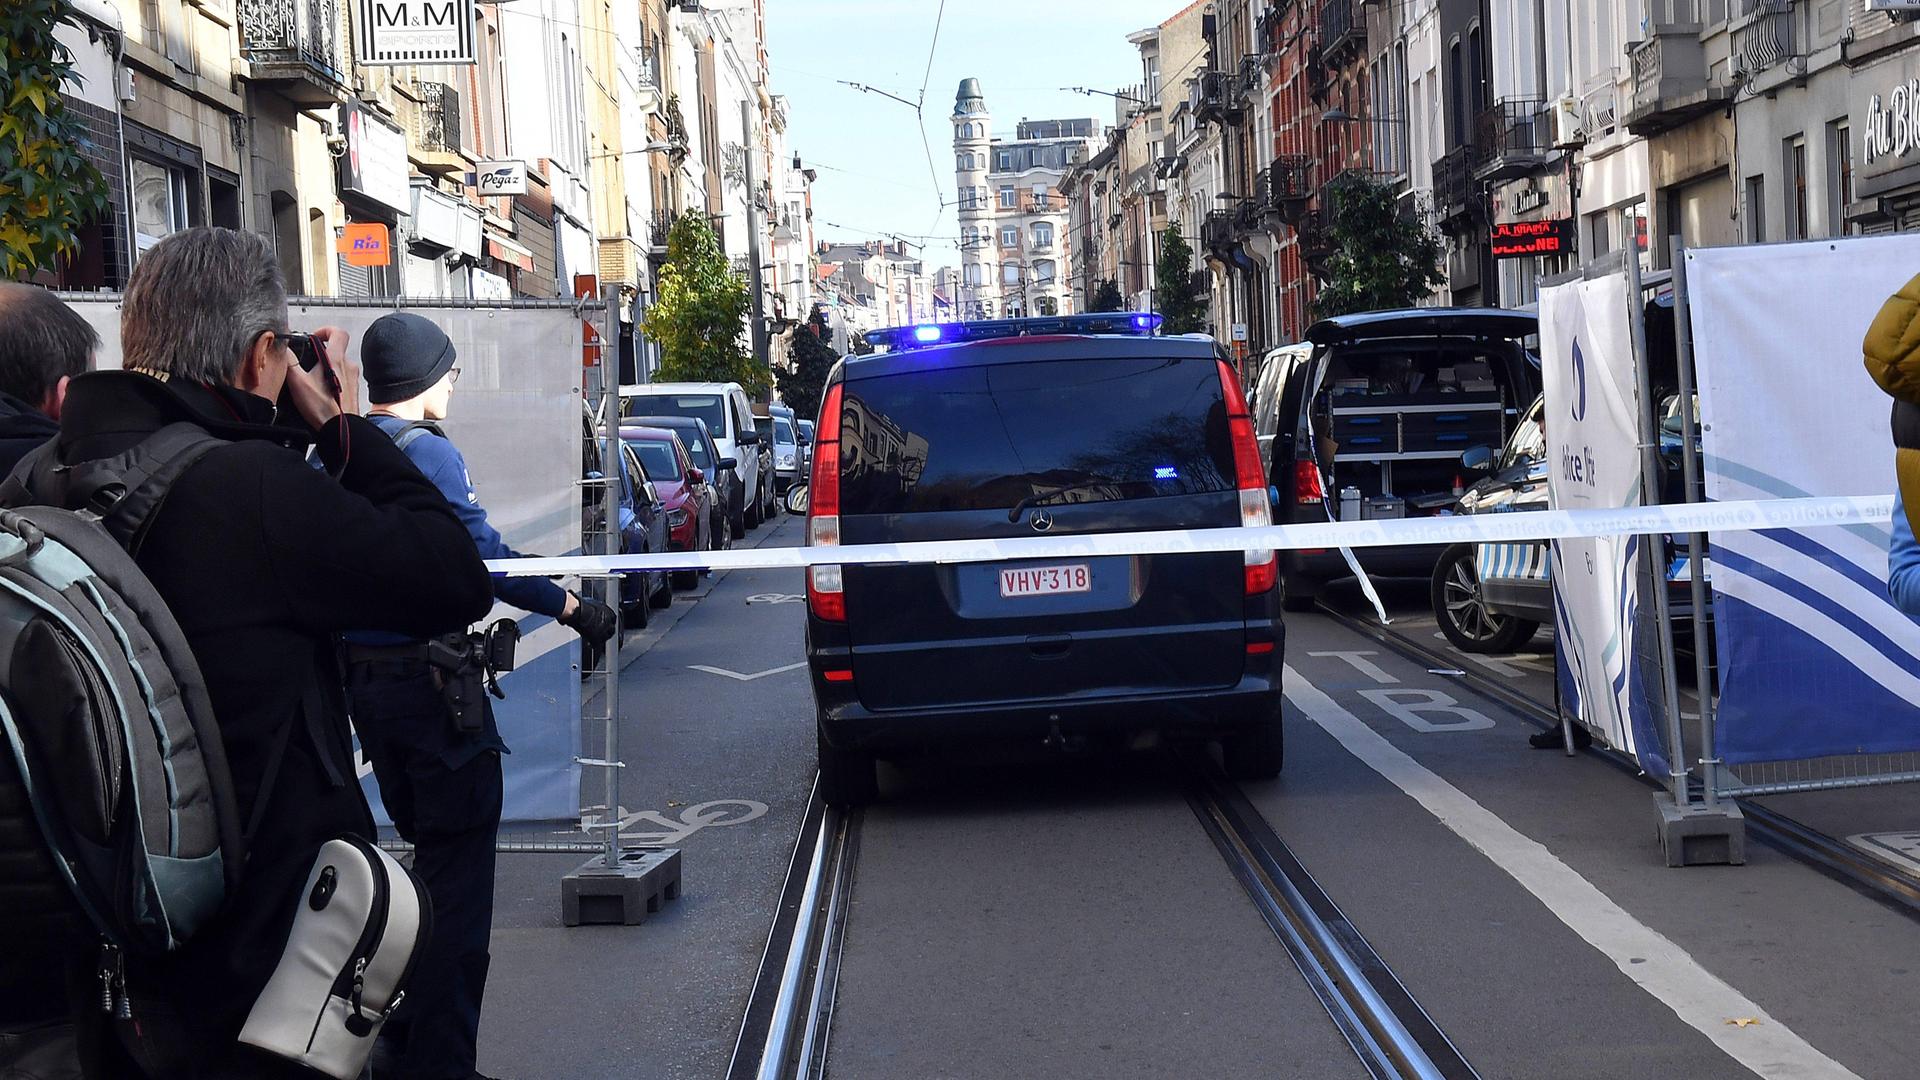 Abgesperrte Straße in Brüssel, in dem sich ein Café befindet, in dem die Polizei den mutmaßlichen Attentäter angeschossen hat.